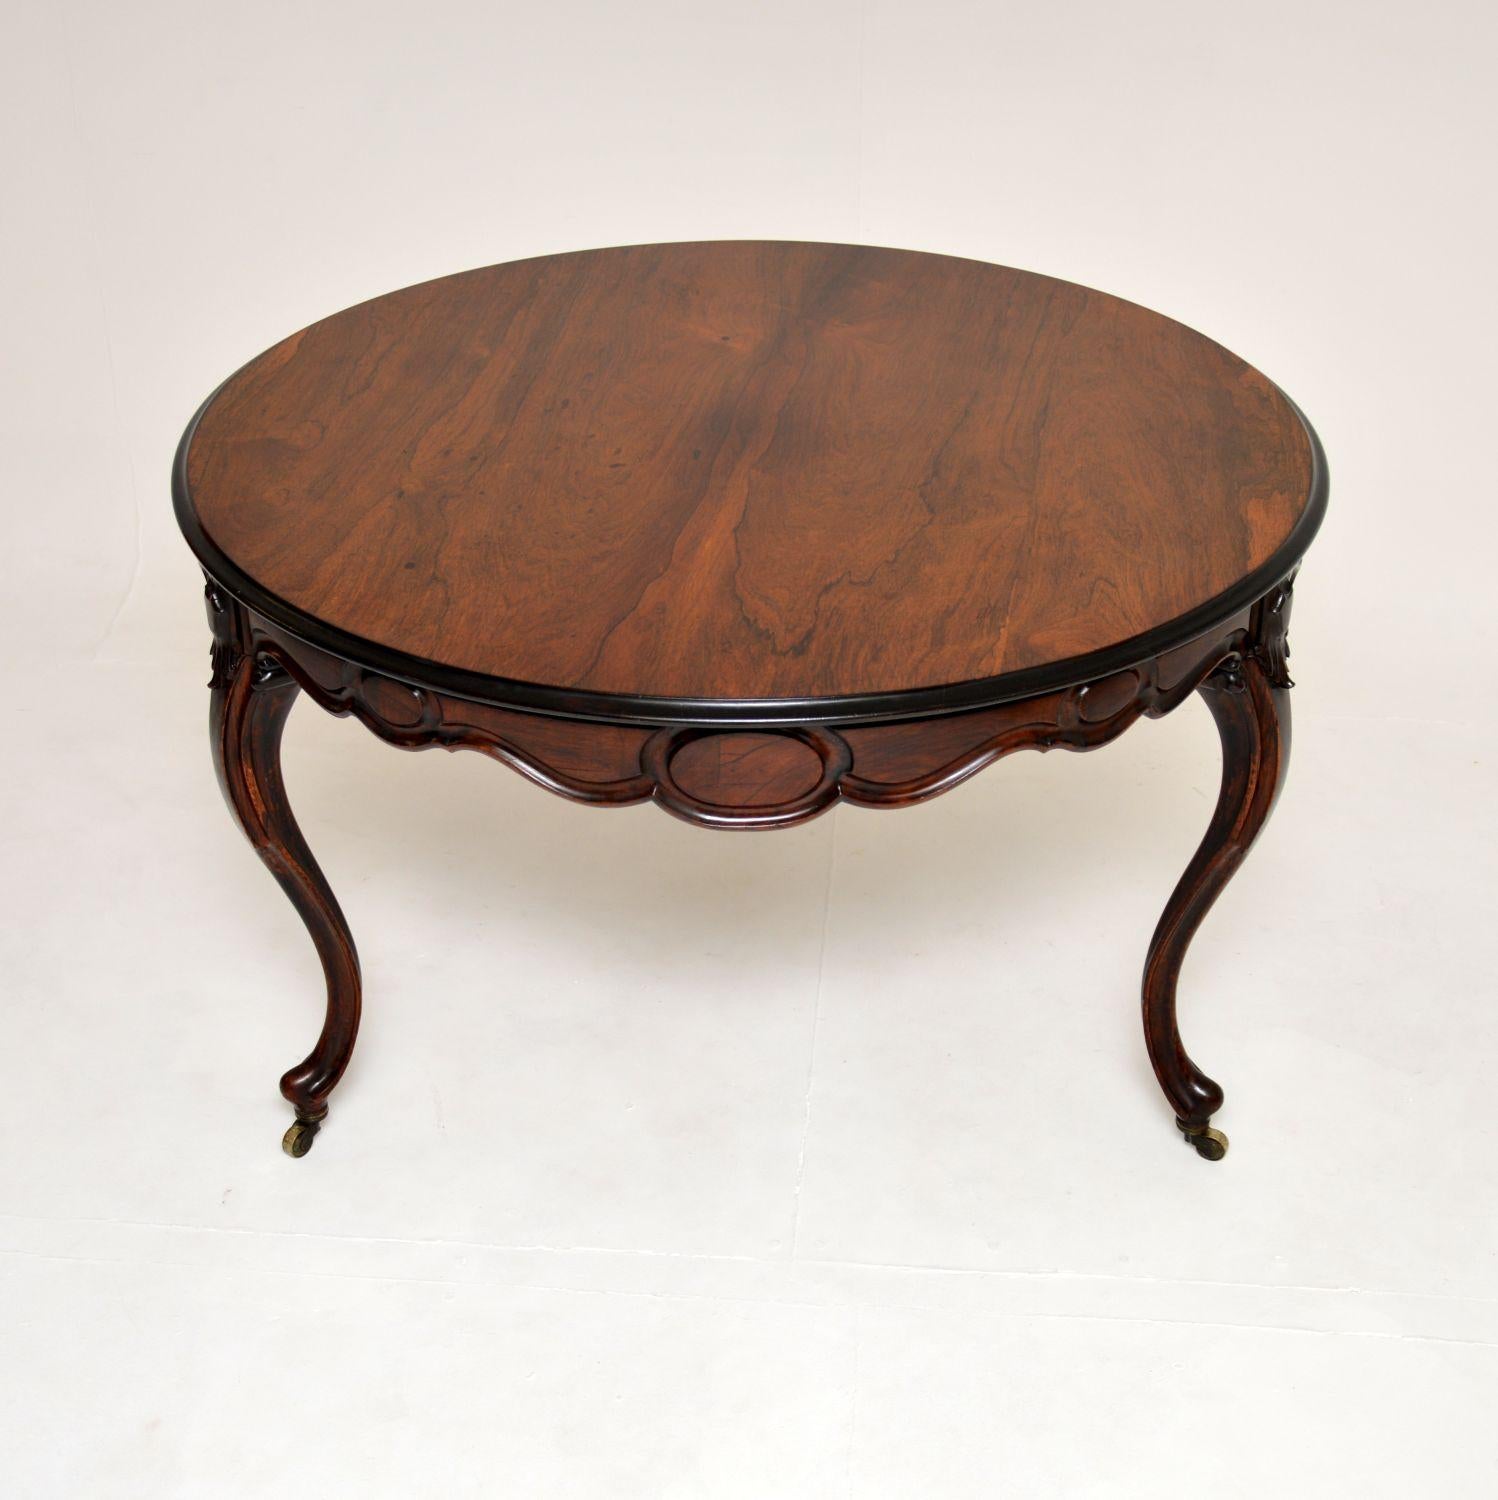 Une belle table de salle à manger circulaire française ancienne et tout à fait inhabituelle. Elle date des environs de la période 1850-1870.

Il est d'une qualité exceptionnelle et présente un design magnifique. Il repose sur trois pieds massifs